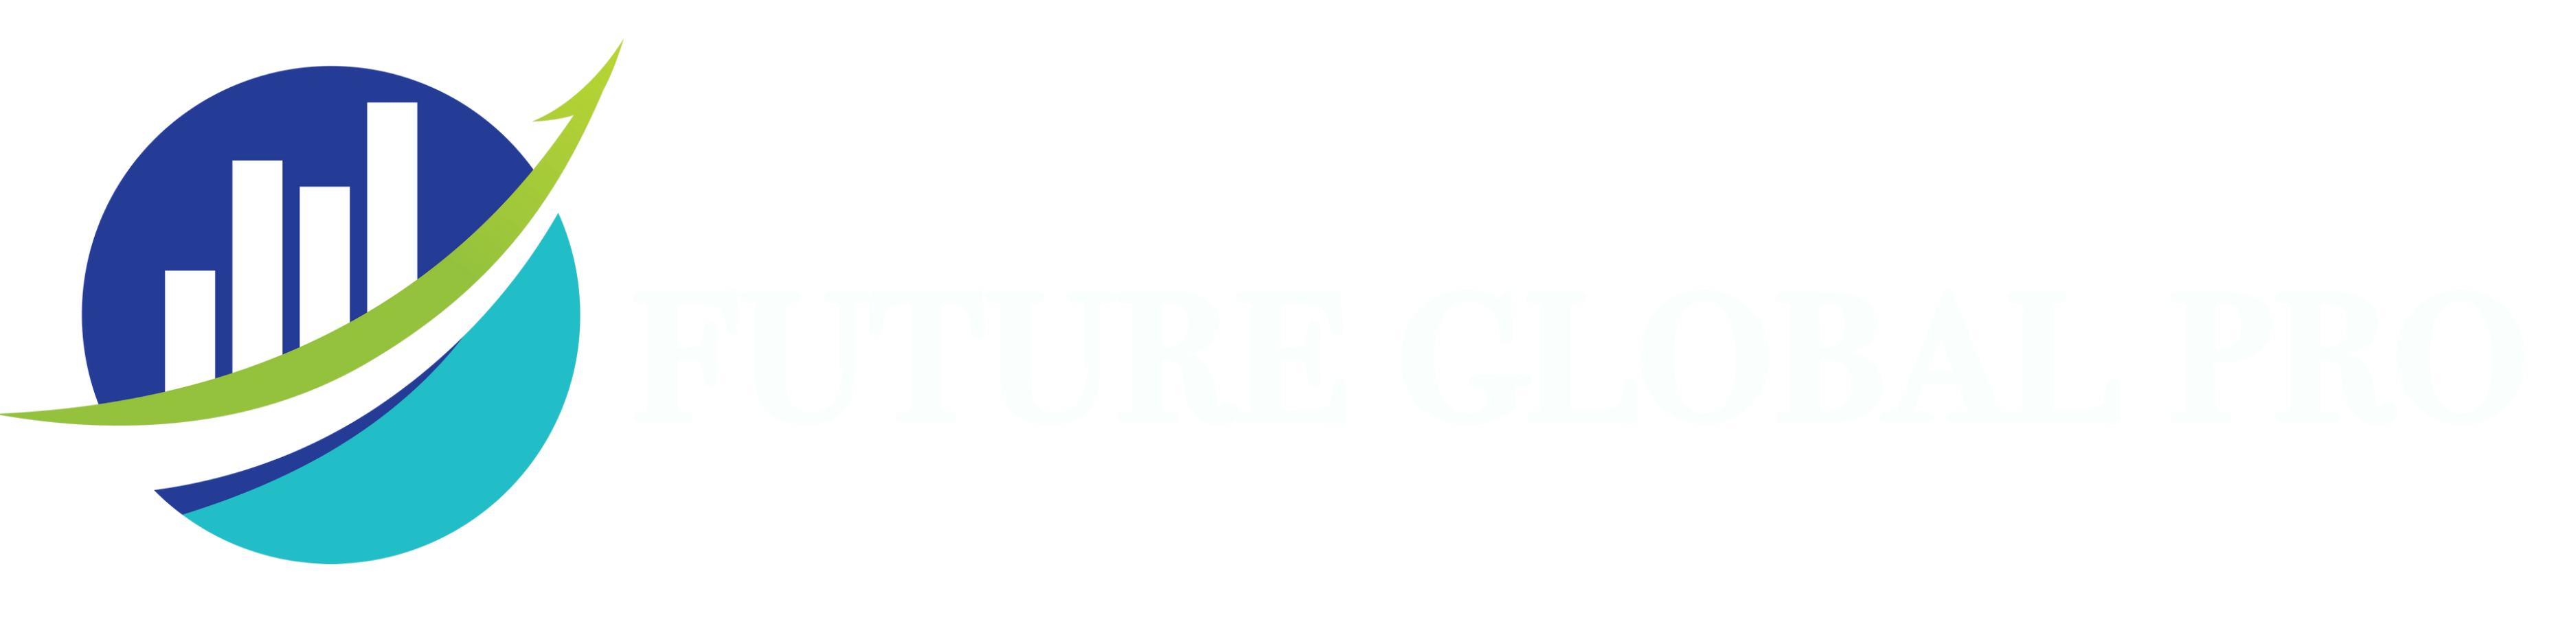 futureglobalpro.com & CO